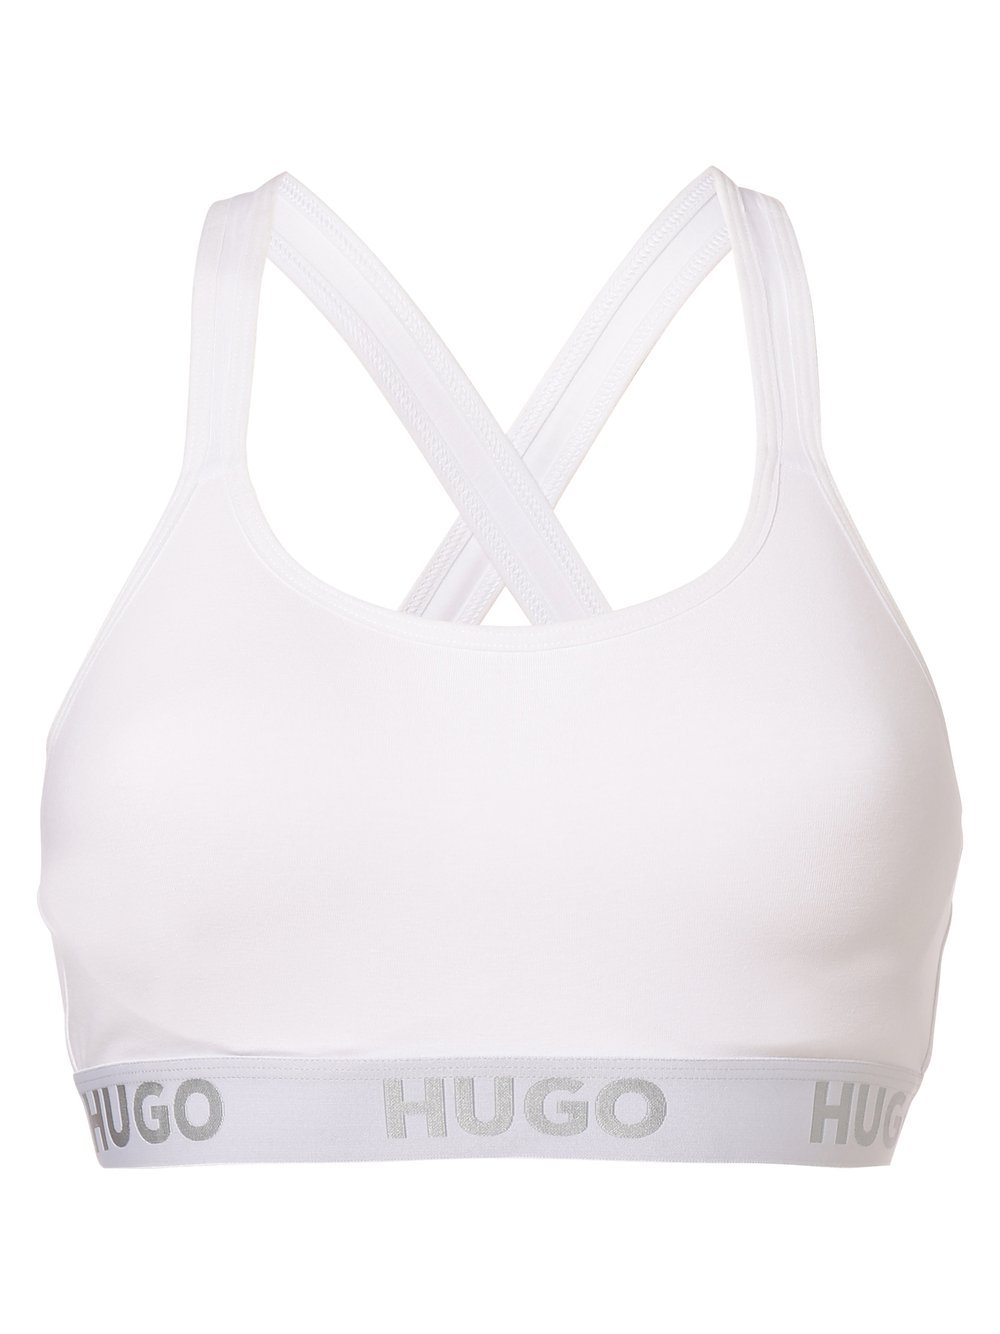 HUGO - Gorset damski  z wypełnieniem, biały